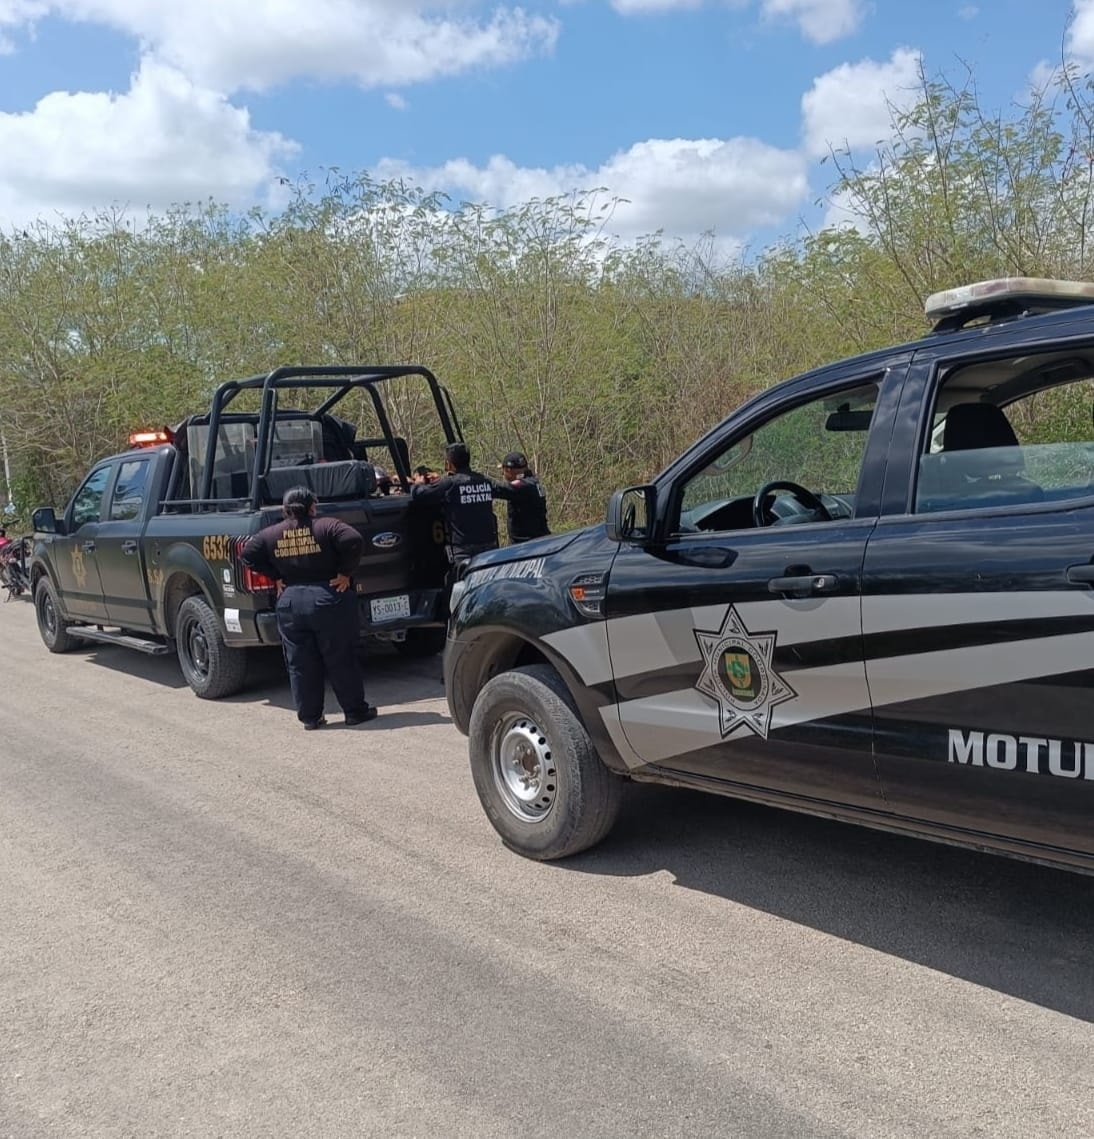 Cae integrante de una mafia de prestamistas colombianos en Motul, Yucatán